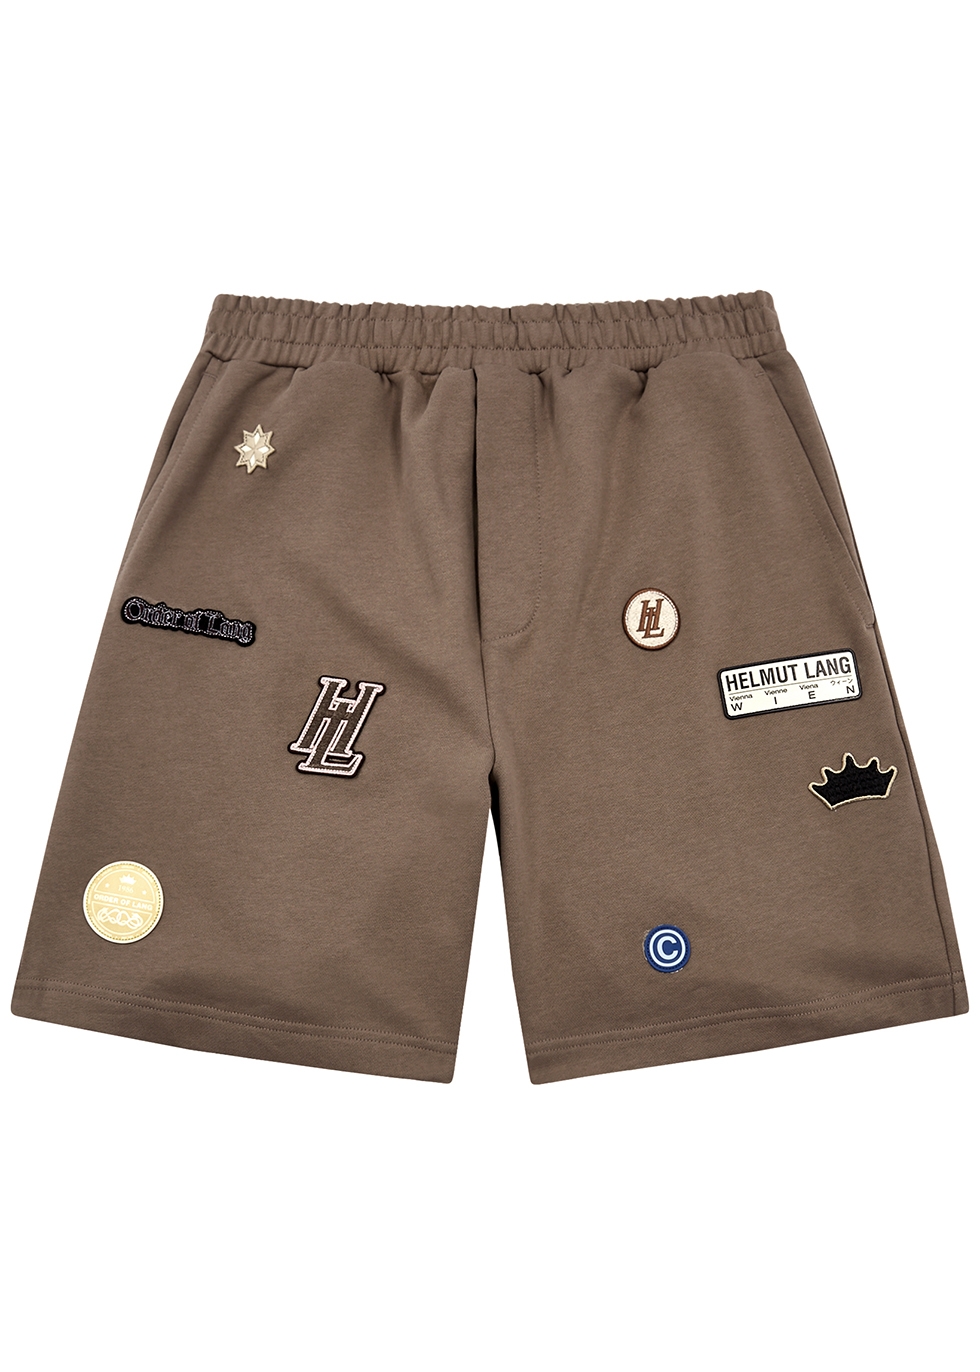 Helmut Lang Societas appliquéd cotton shorts